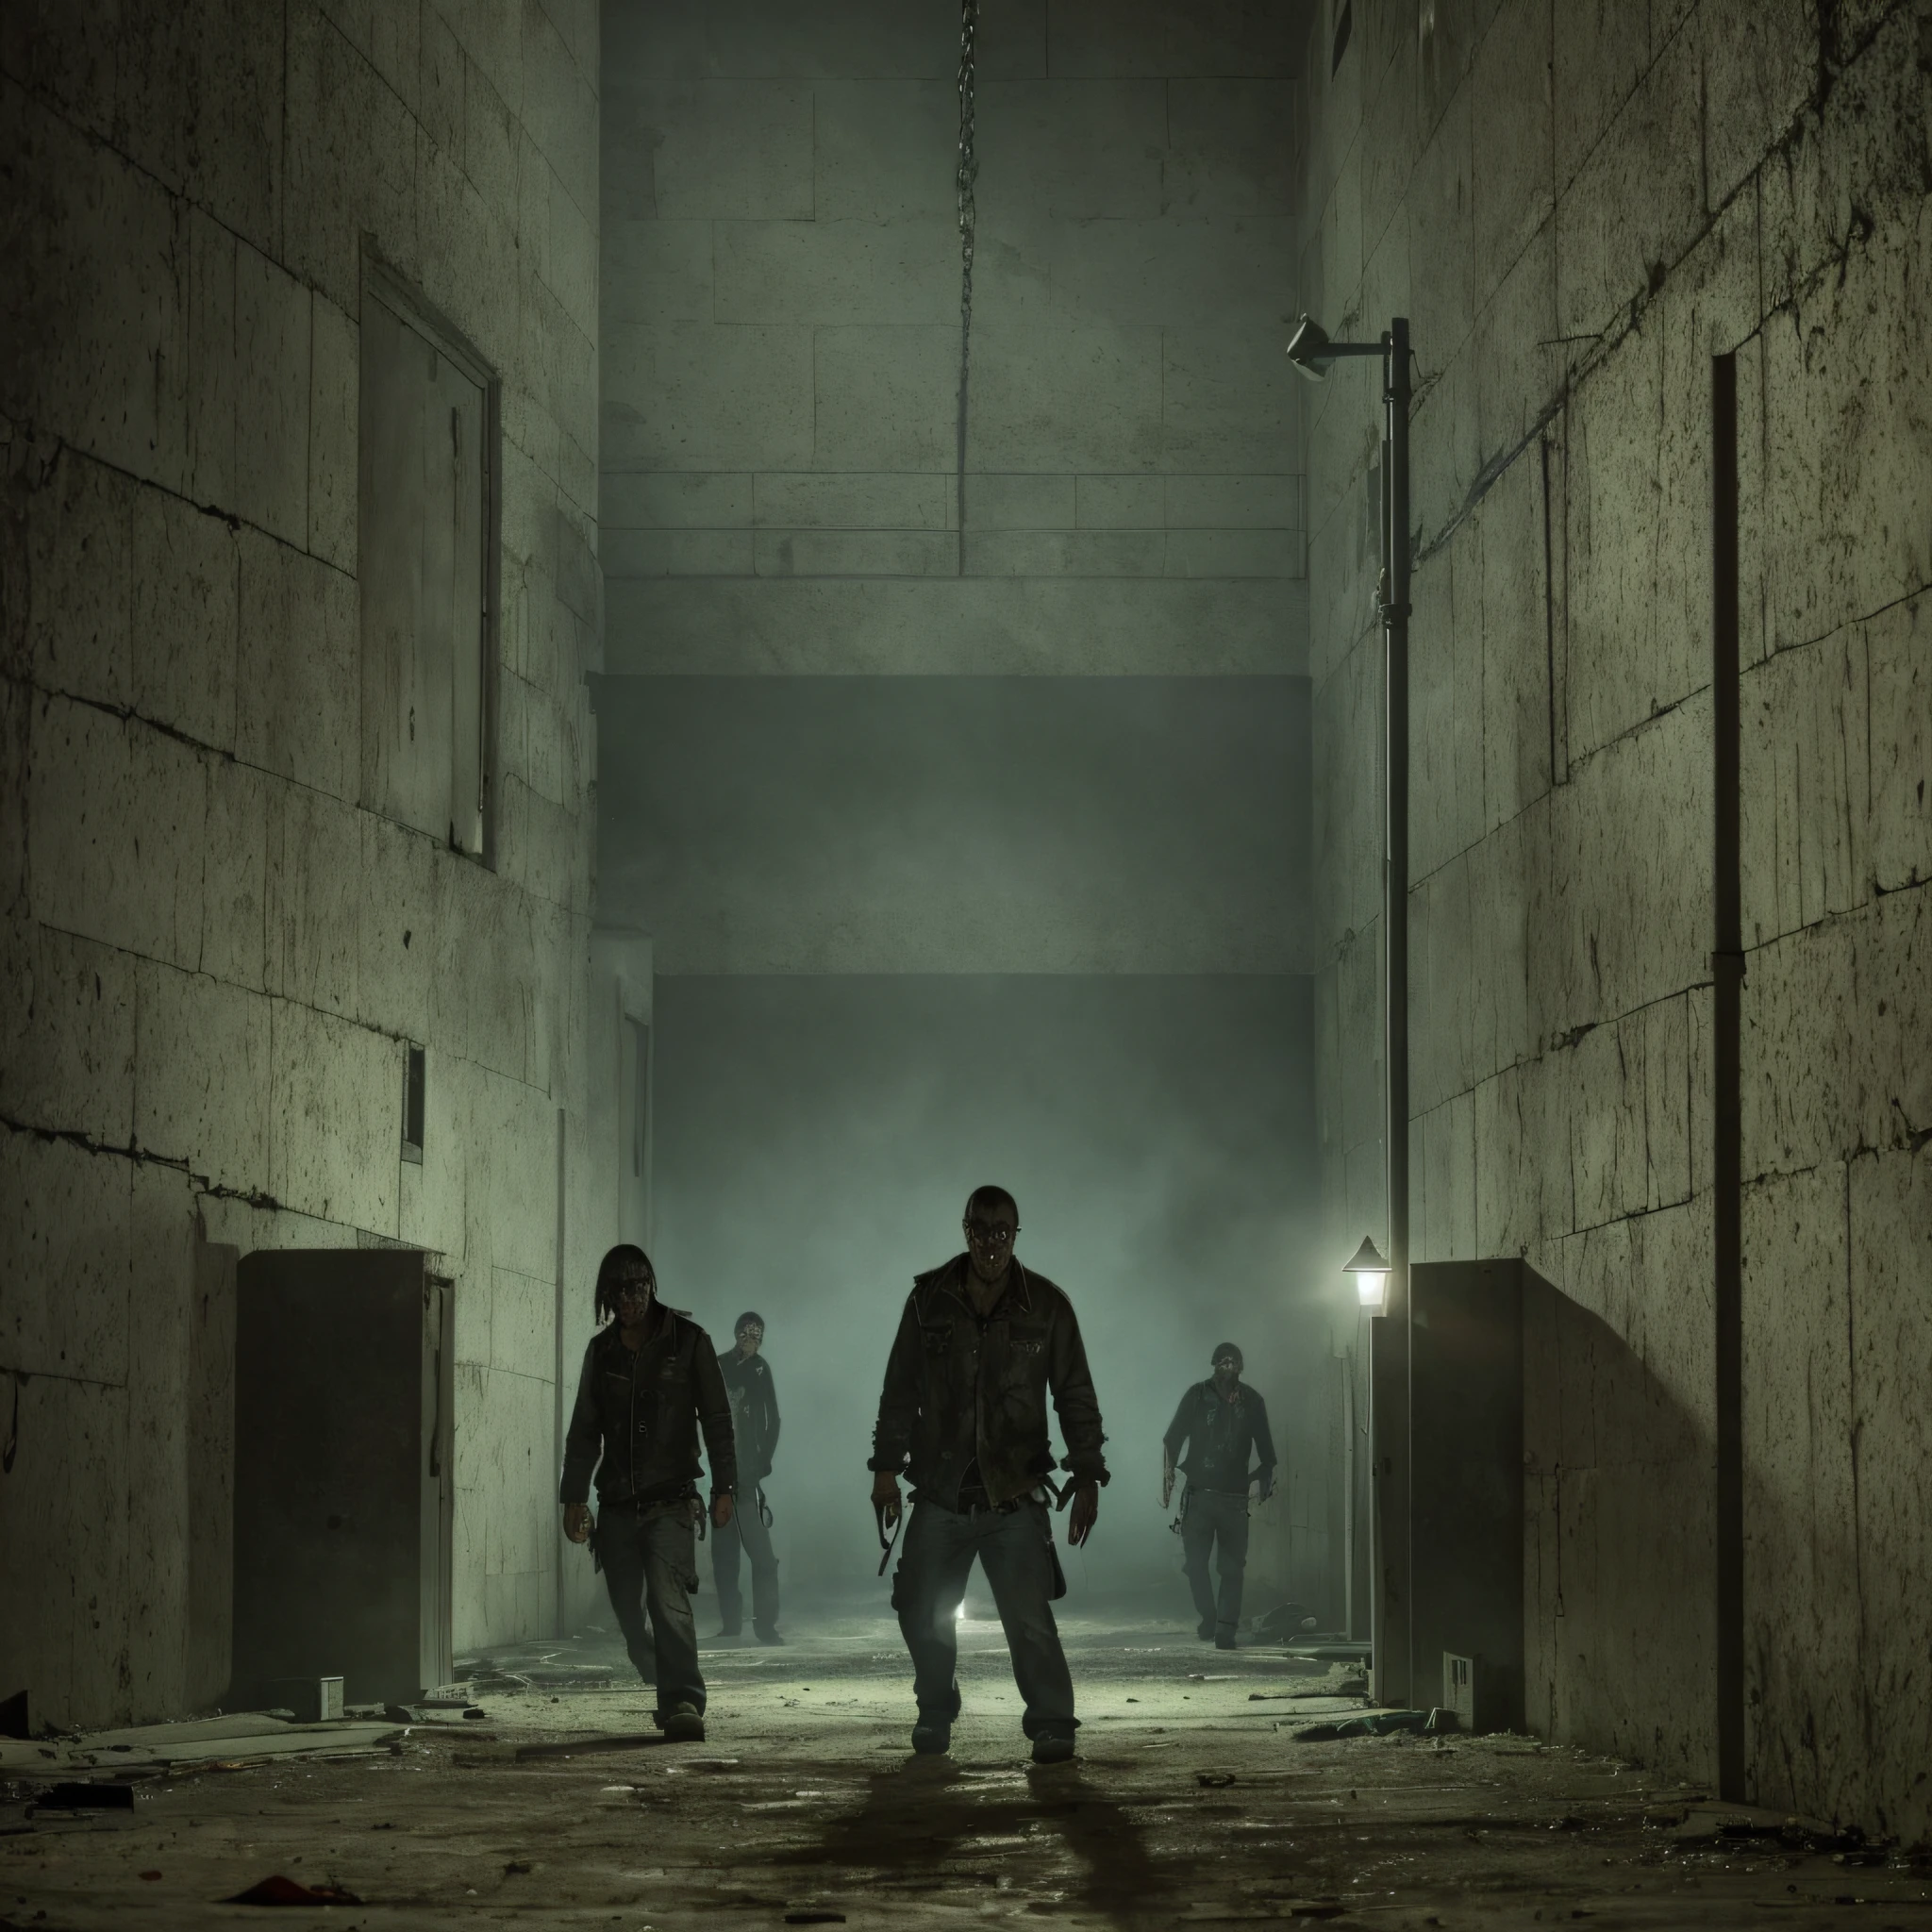 Couverture de film effrayante avec des zombies autour d&#39;une prison entourée la nuit avec une lumière allumée à l&#39;intérieur de la prison